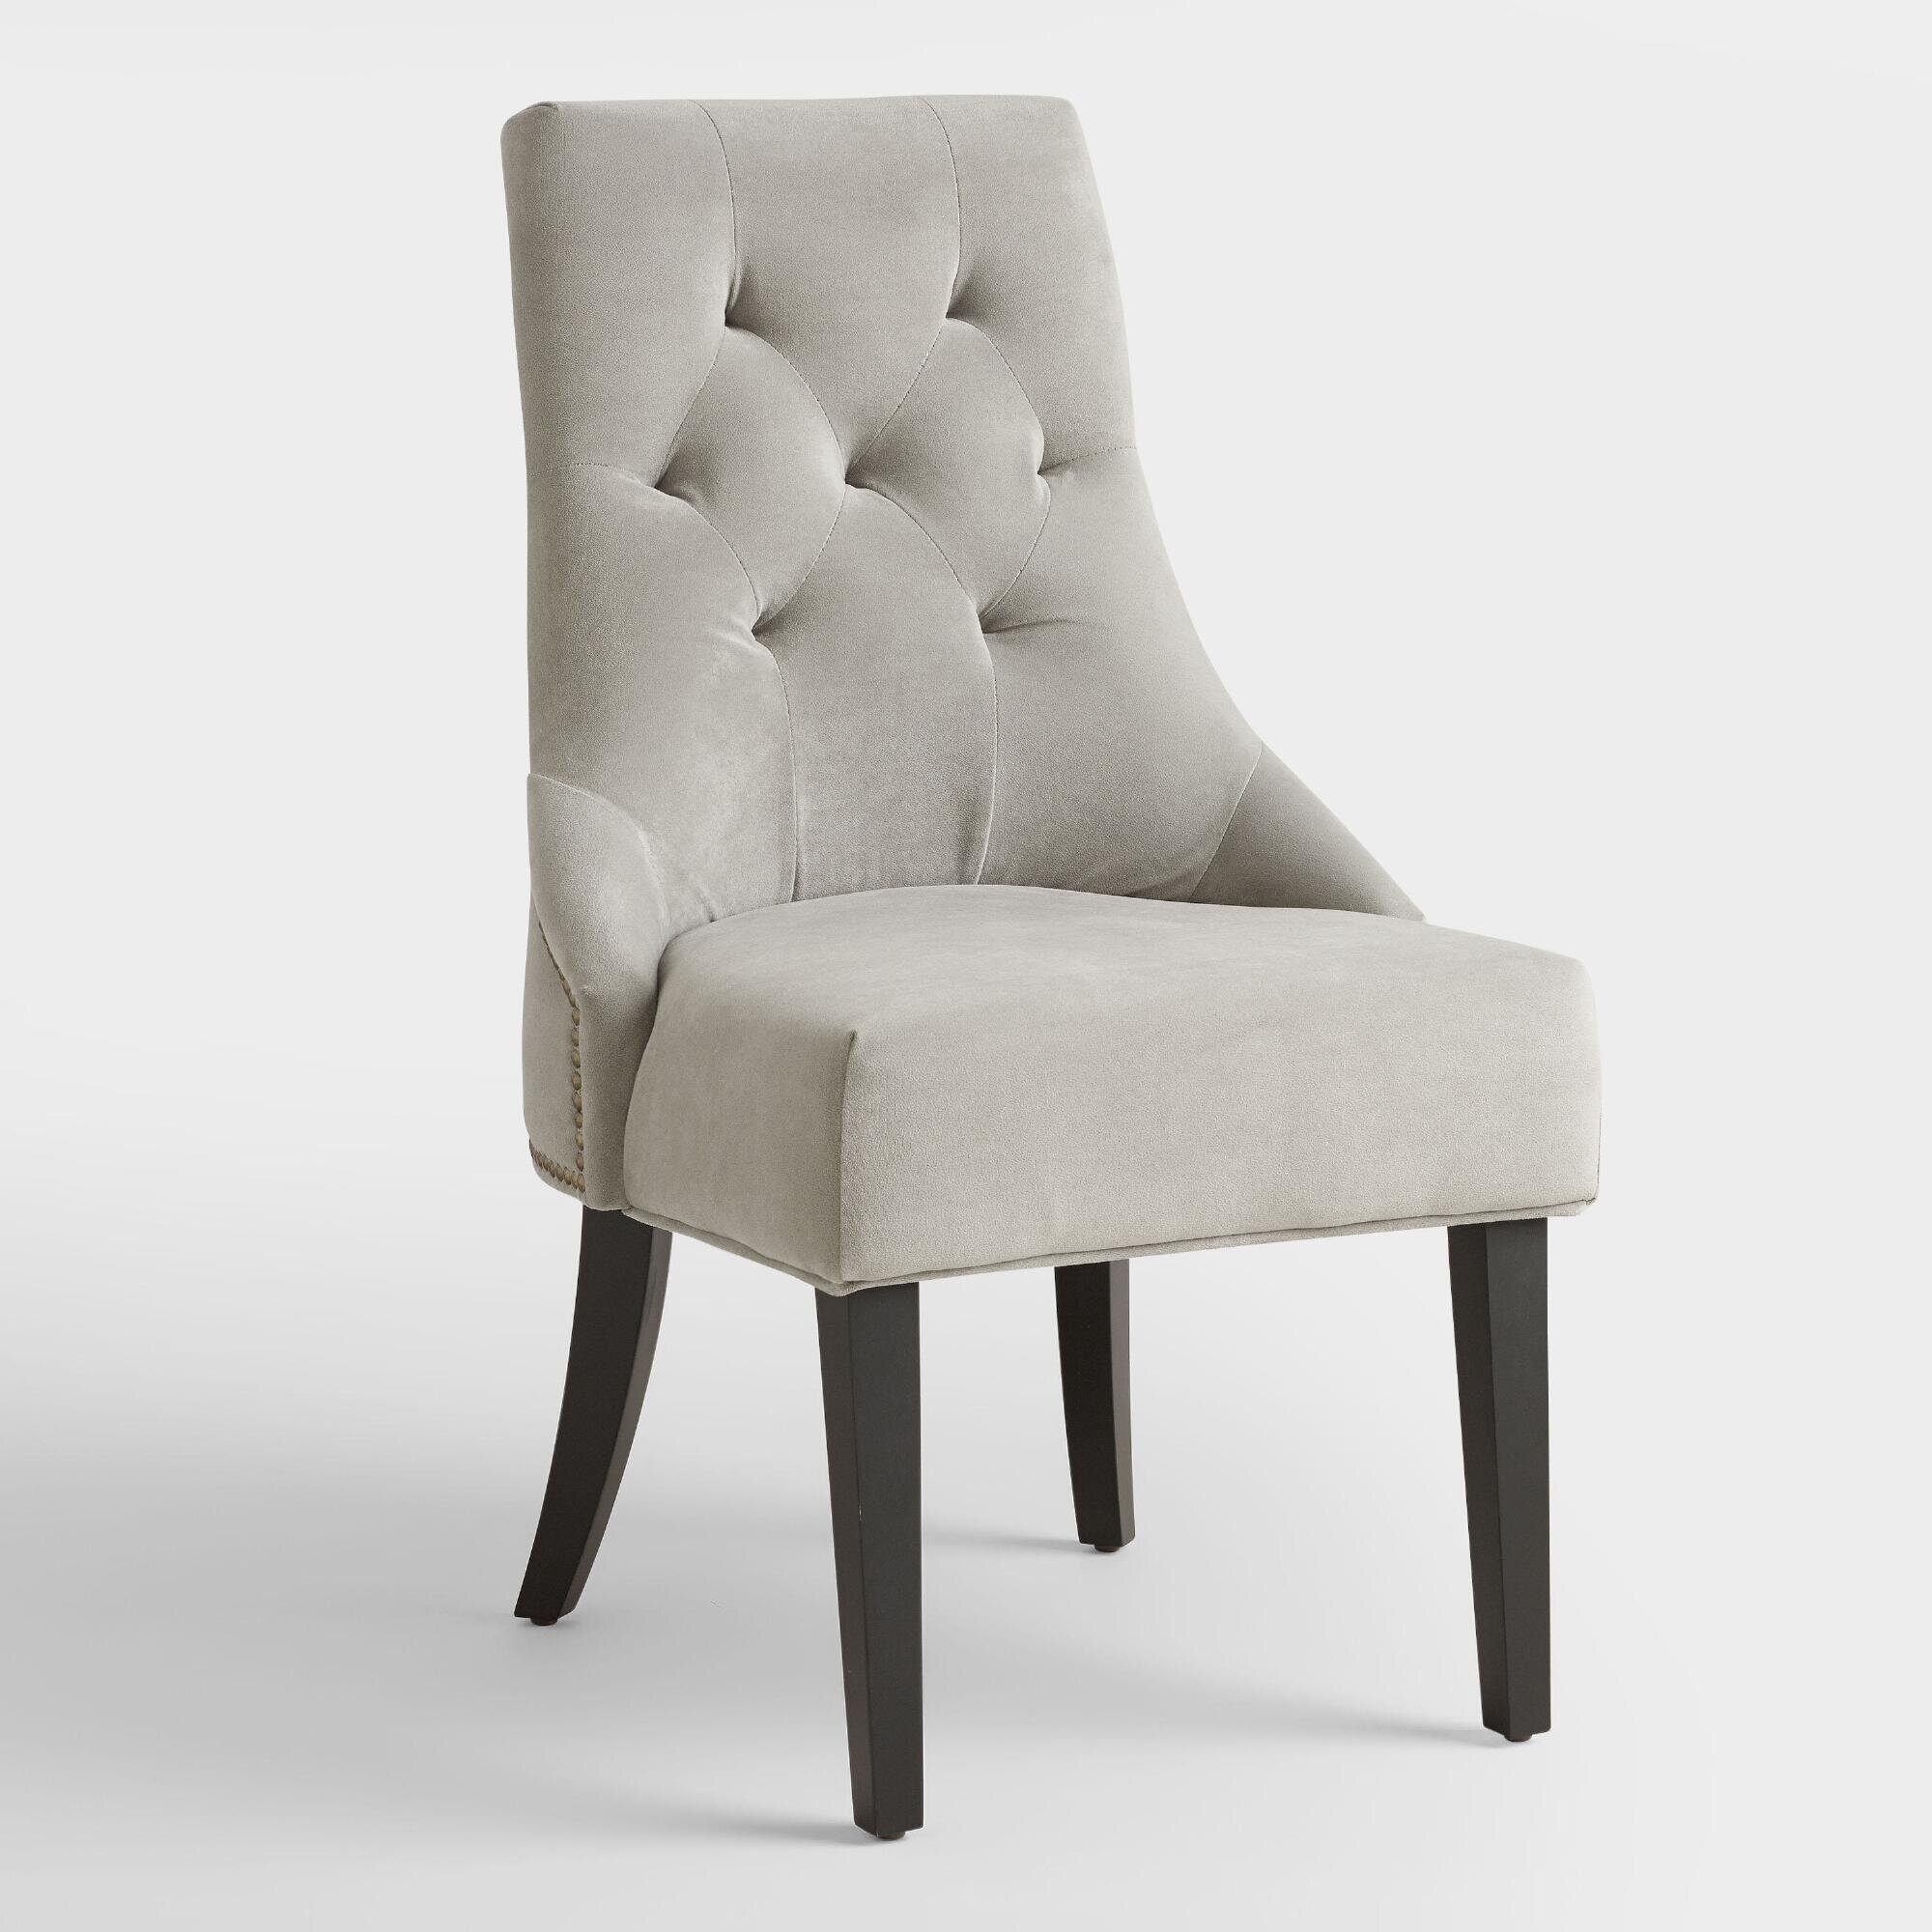 Modern Tufted Chair